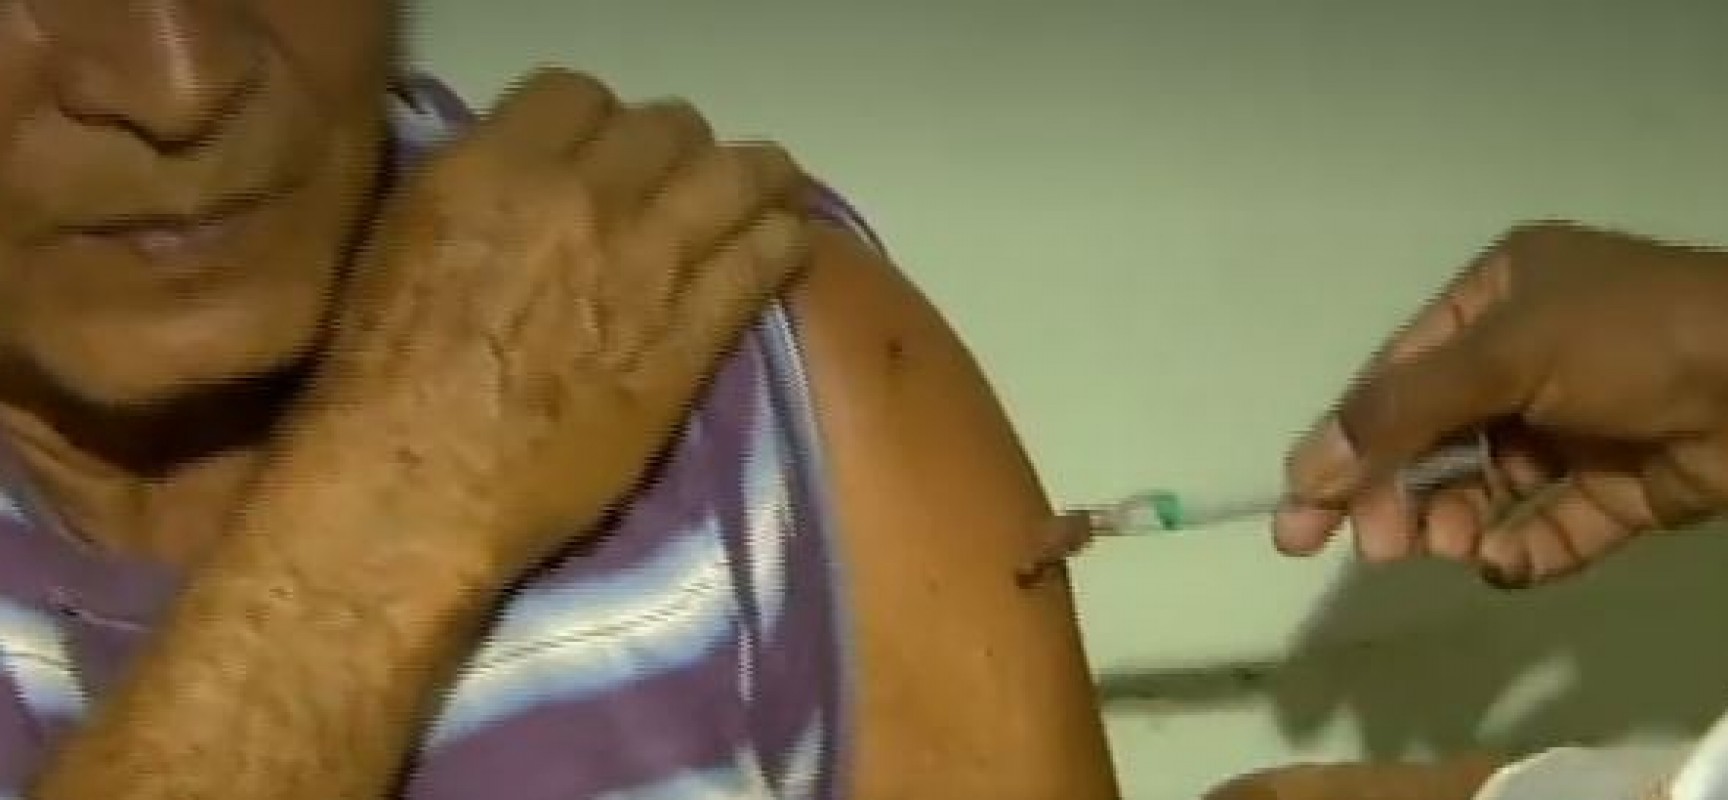 Após primeira morte em cidade de MG, especialistas temem febre amarela urbana